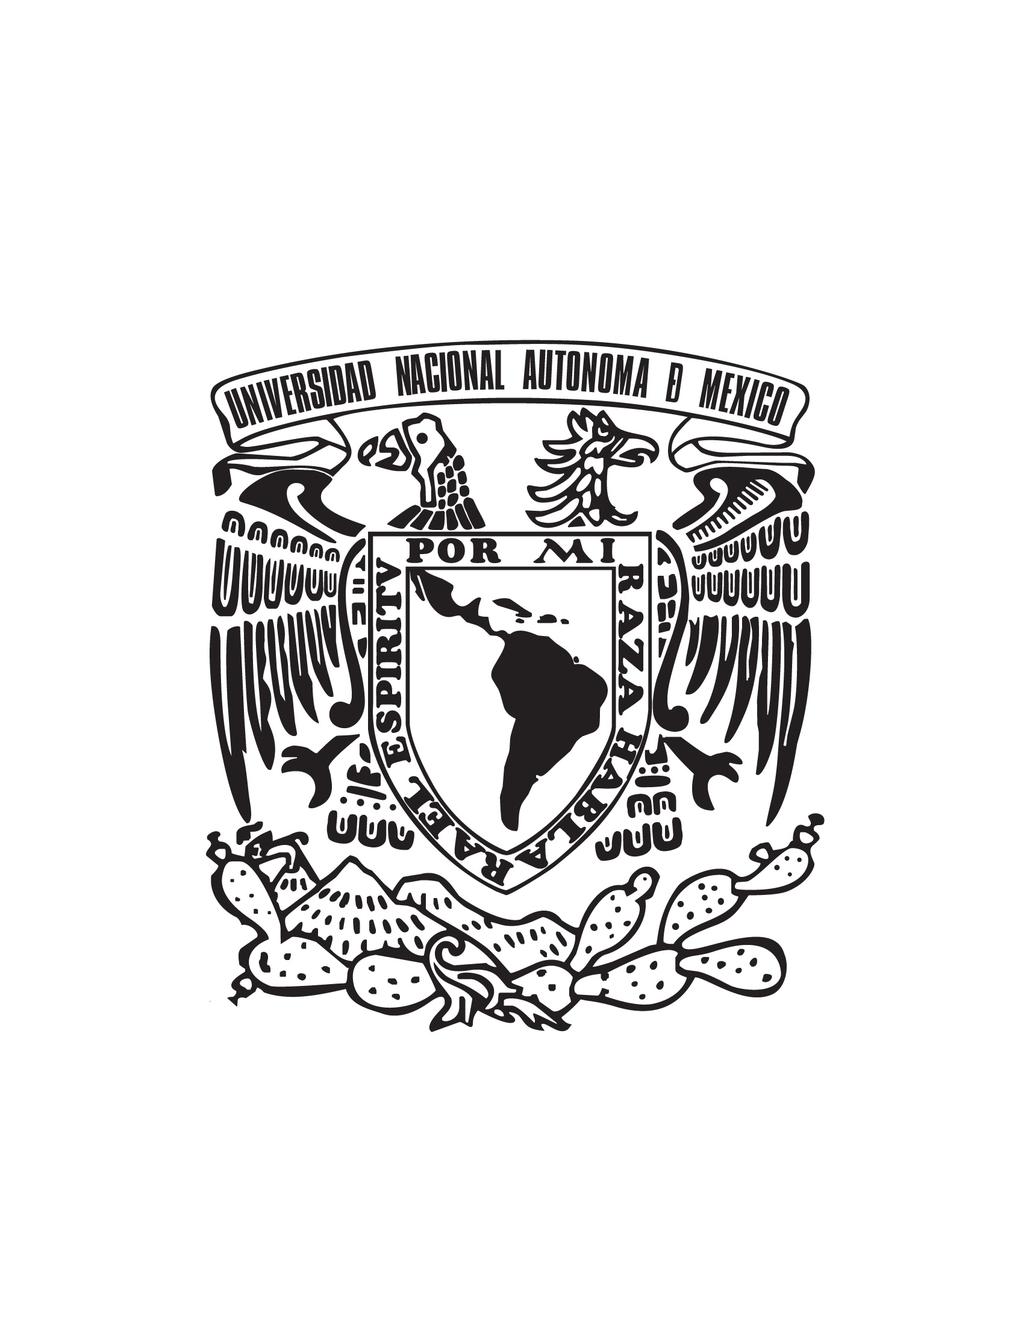 UNIVERSIDAD NACIONAL AUTONOMA DE MEXICO INSTITUTO DE ASTRONOMIA SECRETARÍA ACADÉMICA ACTA 2017-23 correspondiente a la sesión del Consejo Interno celebrada el 13 de Septiembre de 2017.